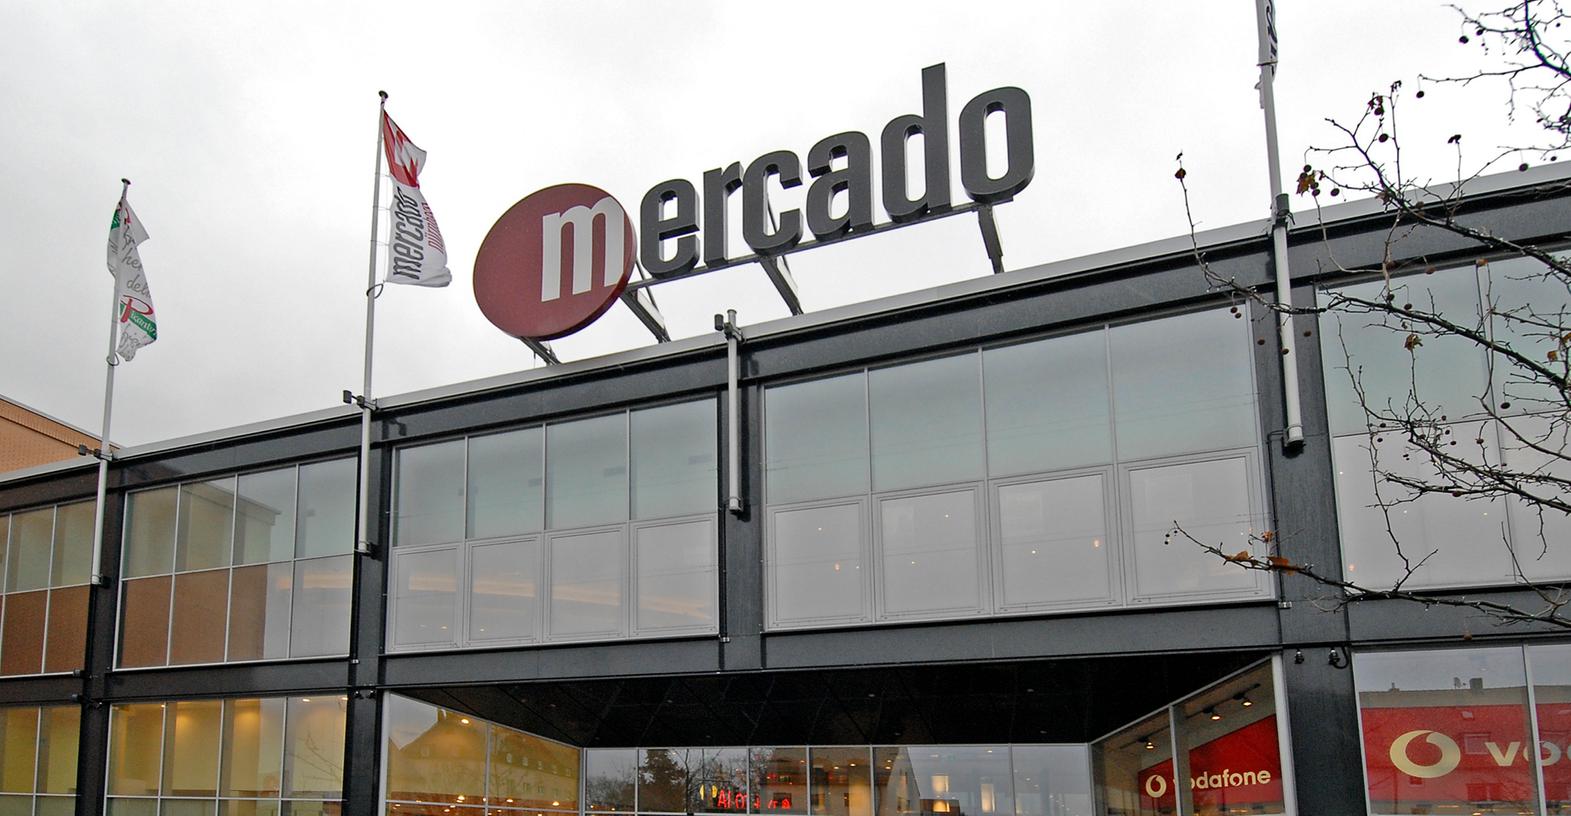 Ins Nürnberger Mercado wird vorerst keine Discothek einziehen. Das bestätigte das Center-Management.